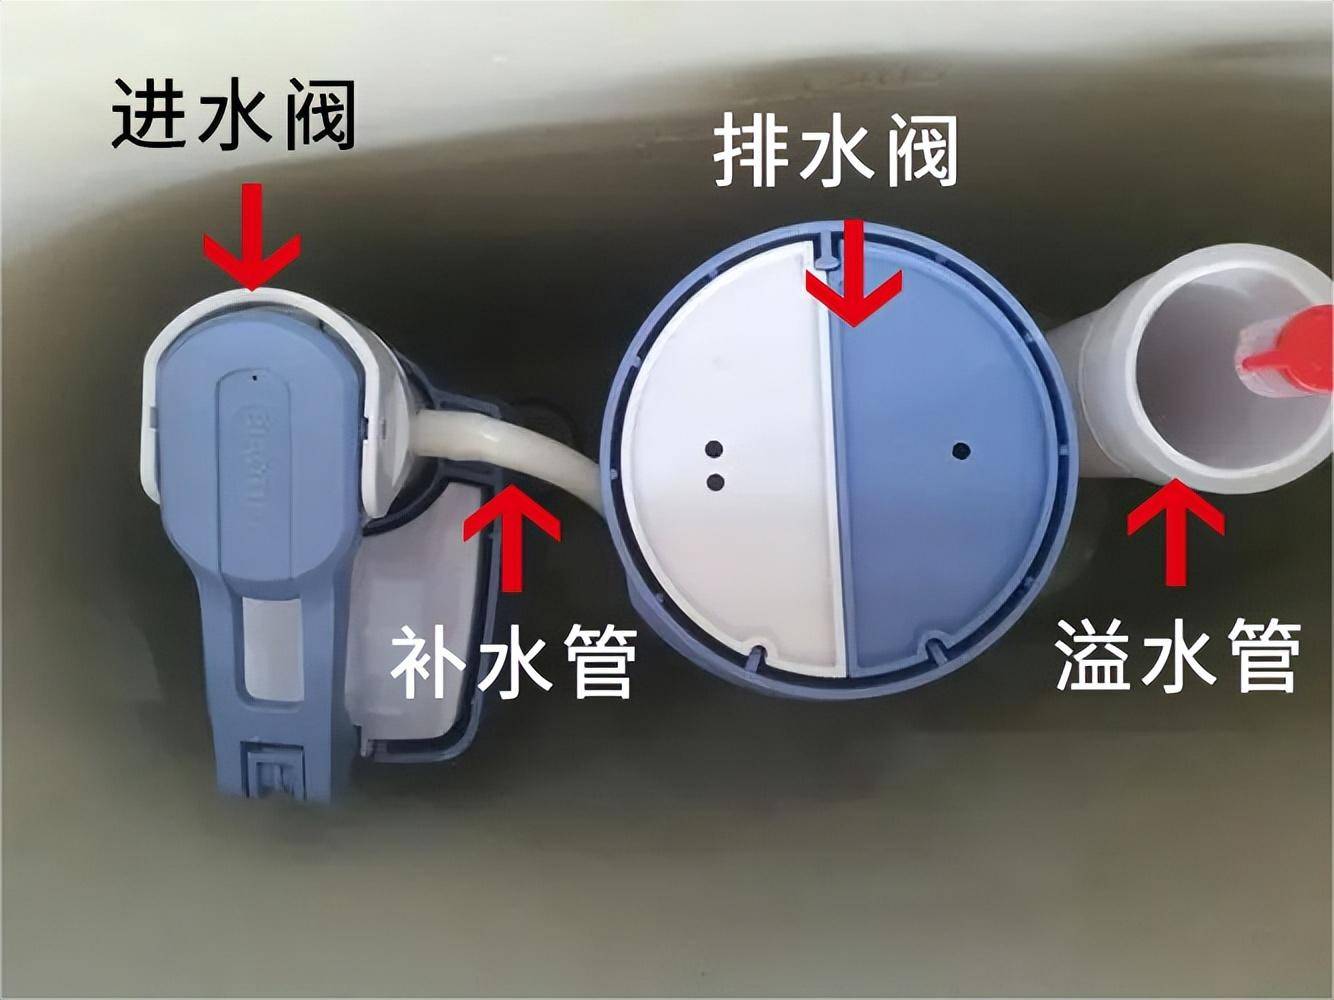 维博卫浴丨图文详解马桶水箱配件及设计功能